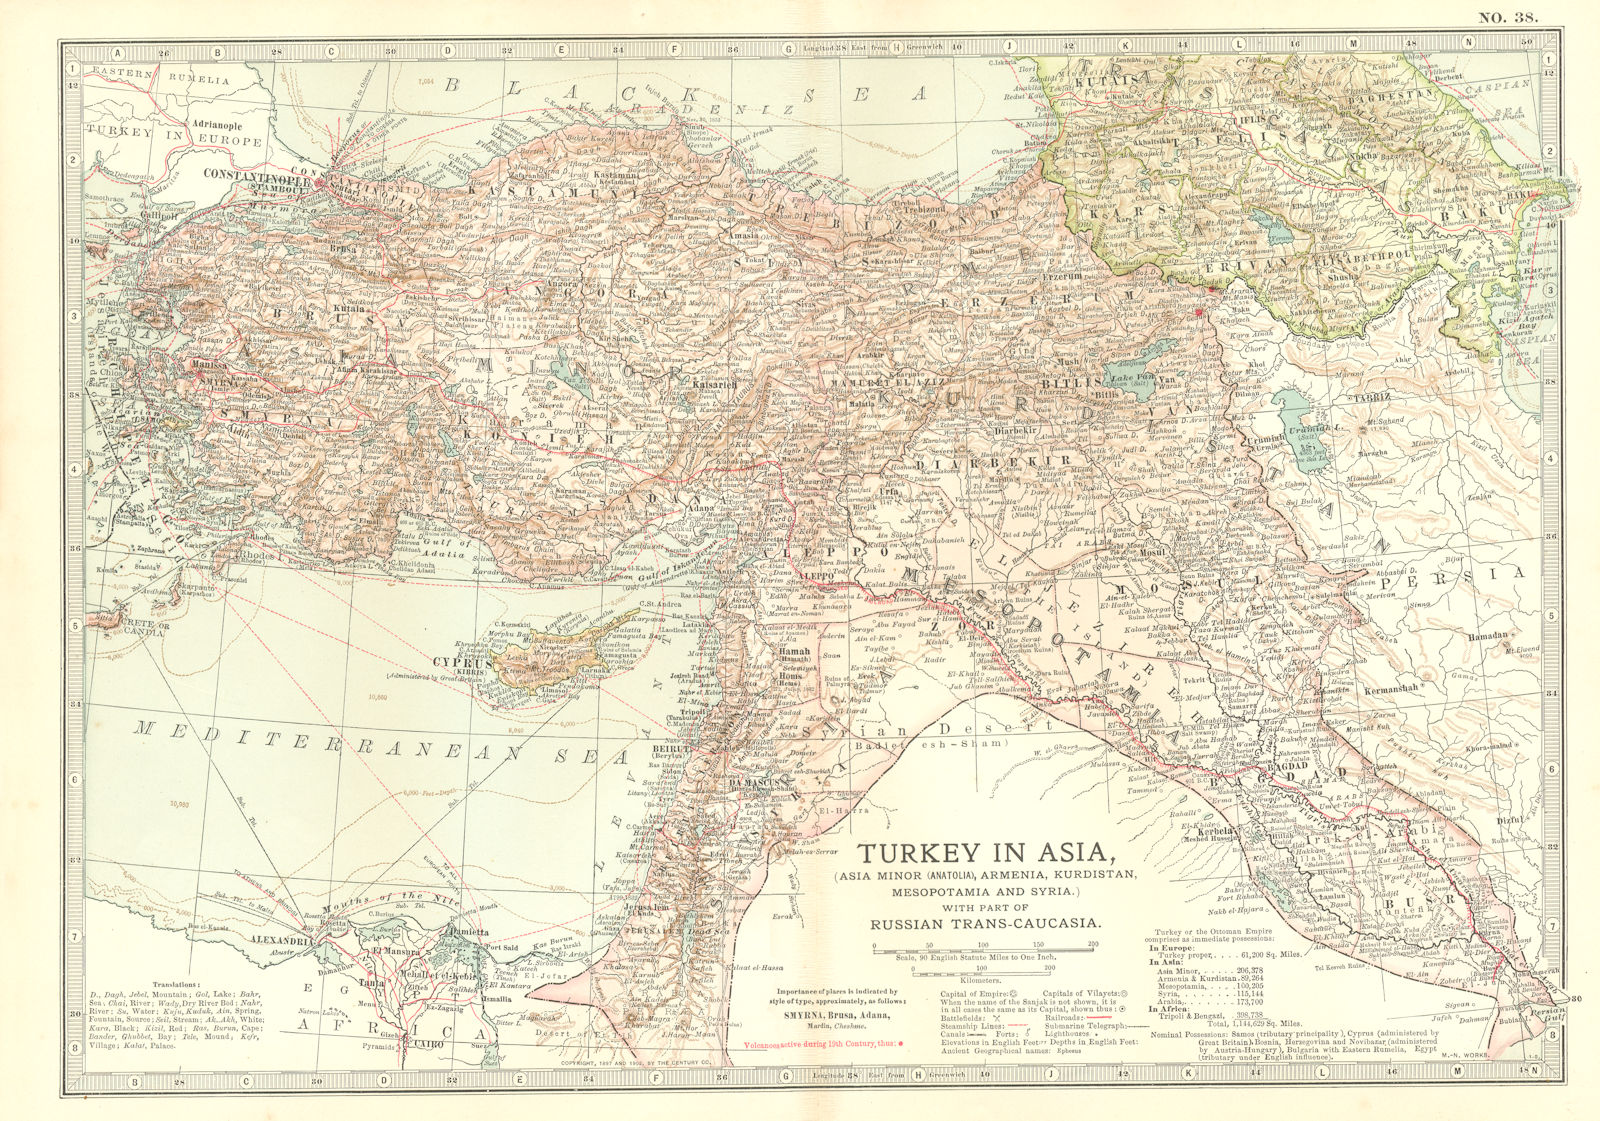 TURKEY ASIA.shows Russo-Turkish wars battles/dates 1828/9 1853 1877/8 1903 map